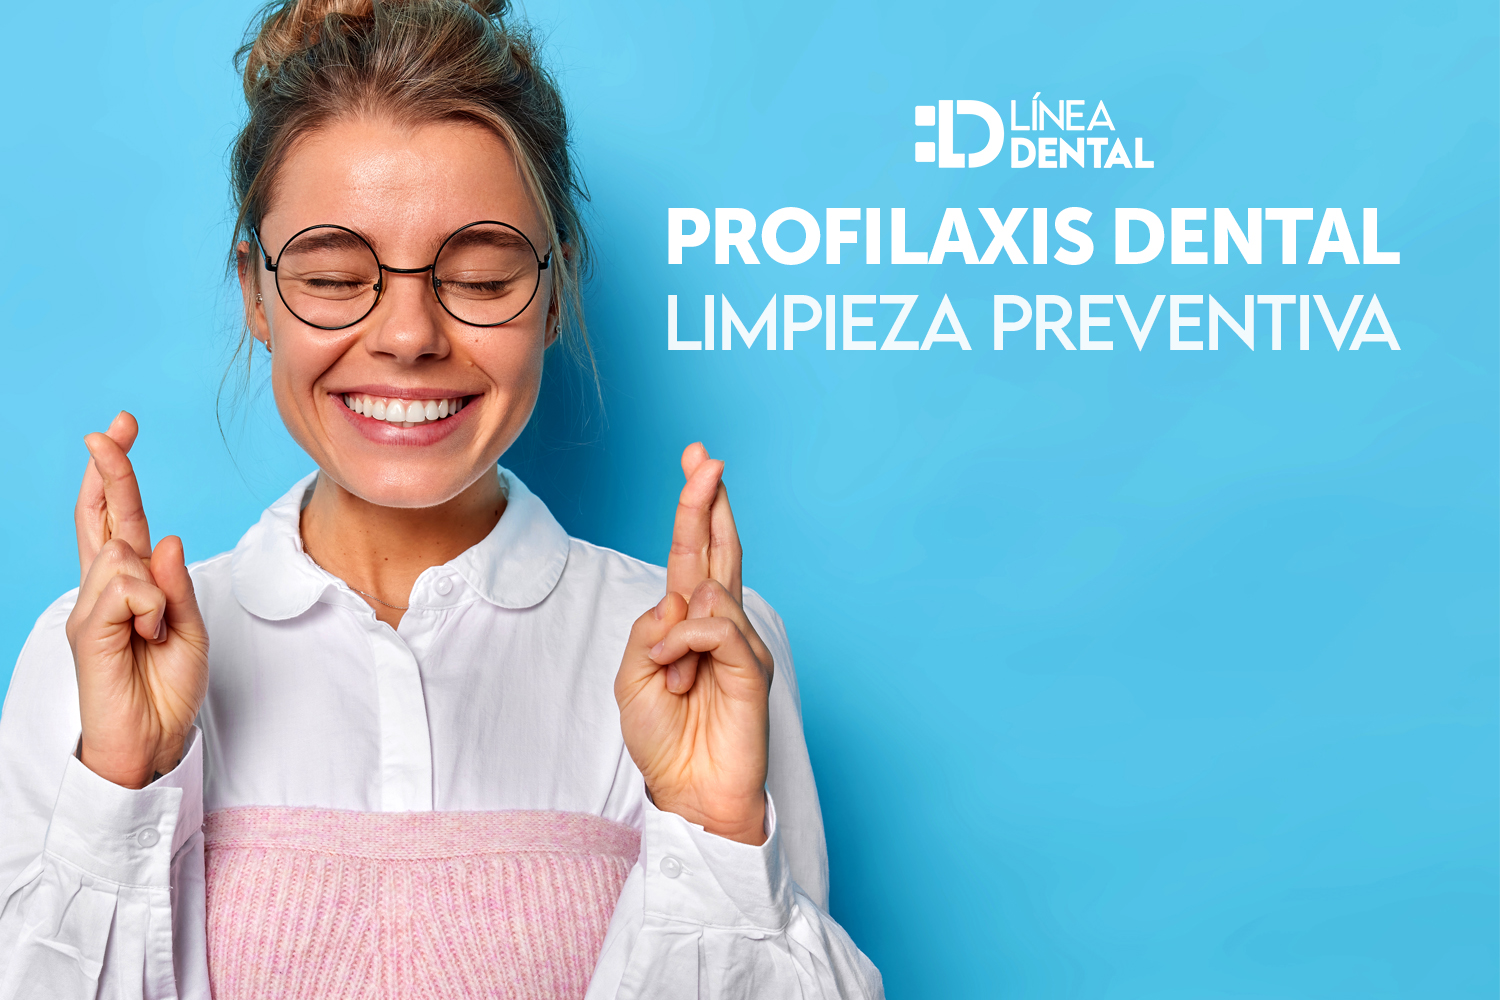 profilaxis-limpieza-preventiva-dental-dentista-odontologo-linea-dental-ciudad-real-miguelturra